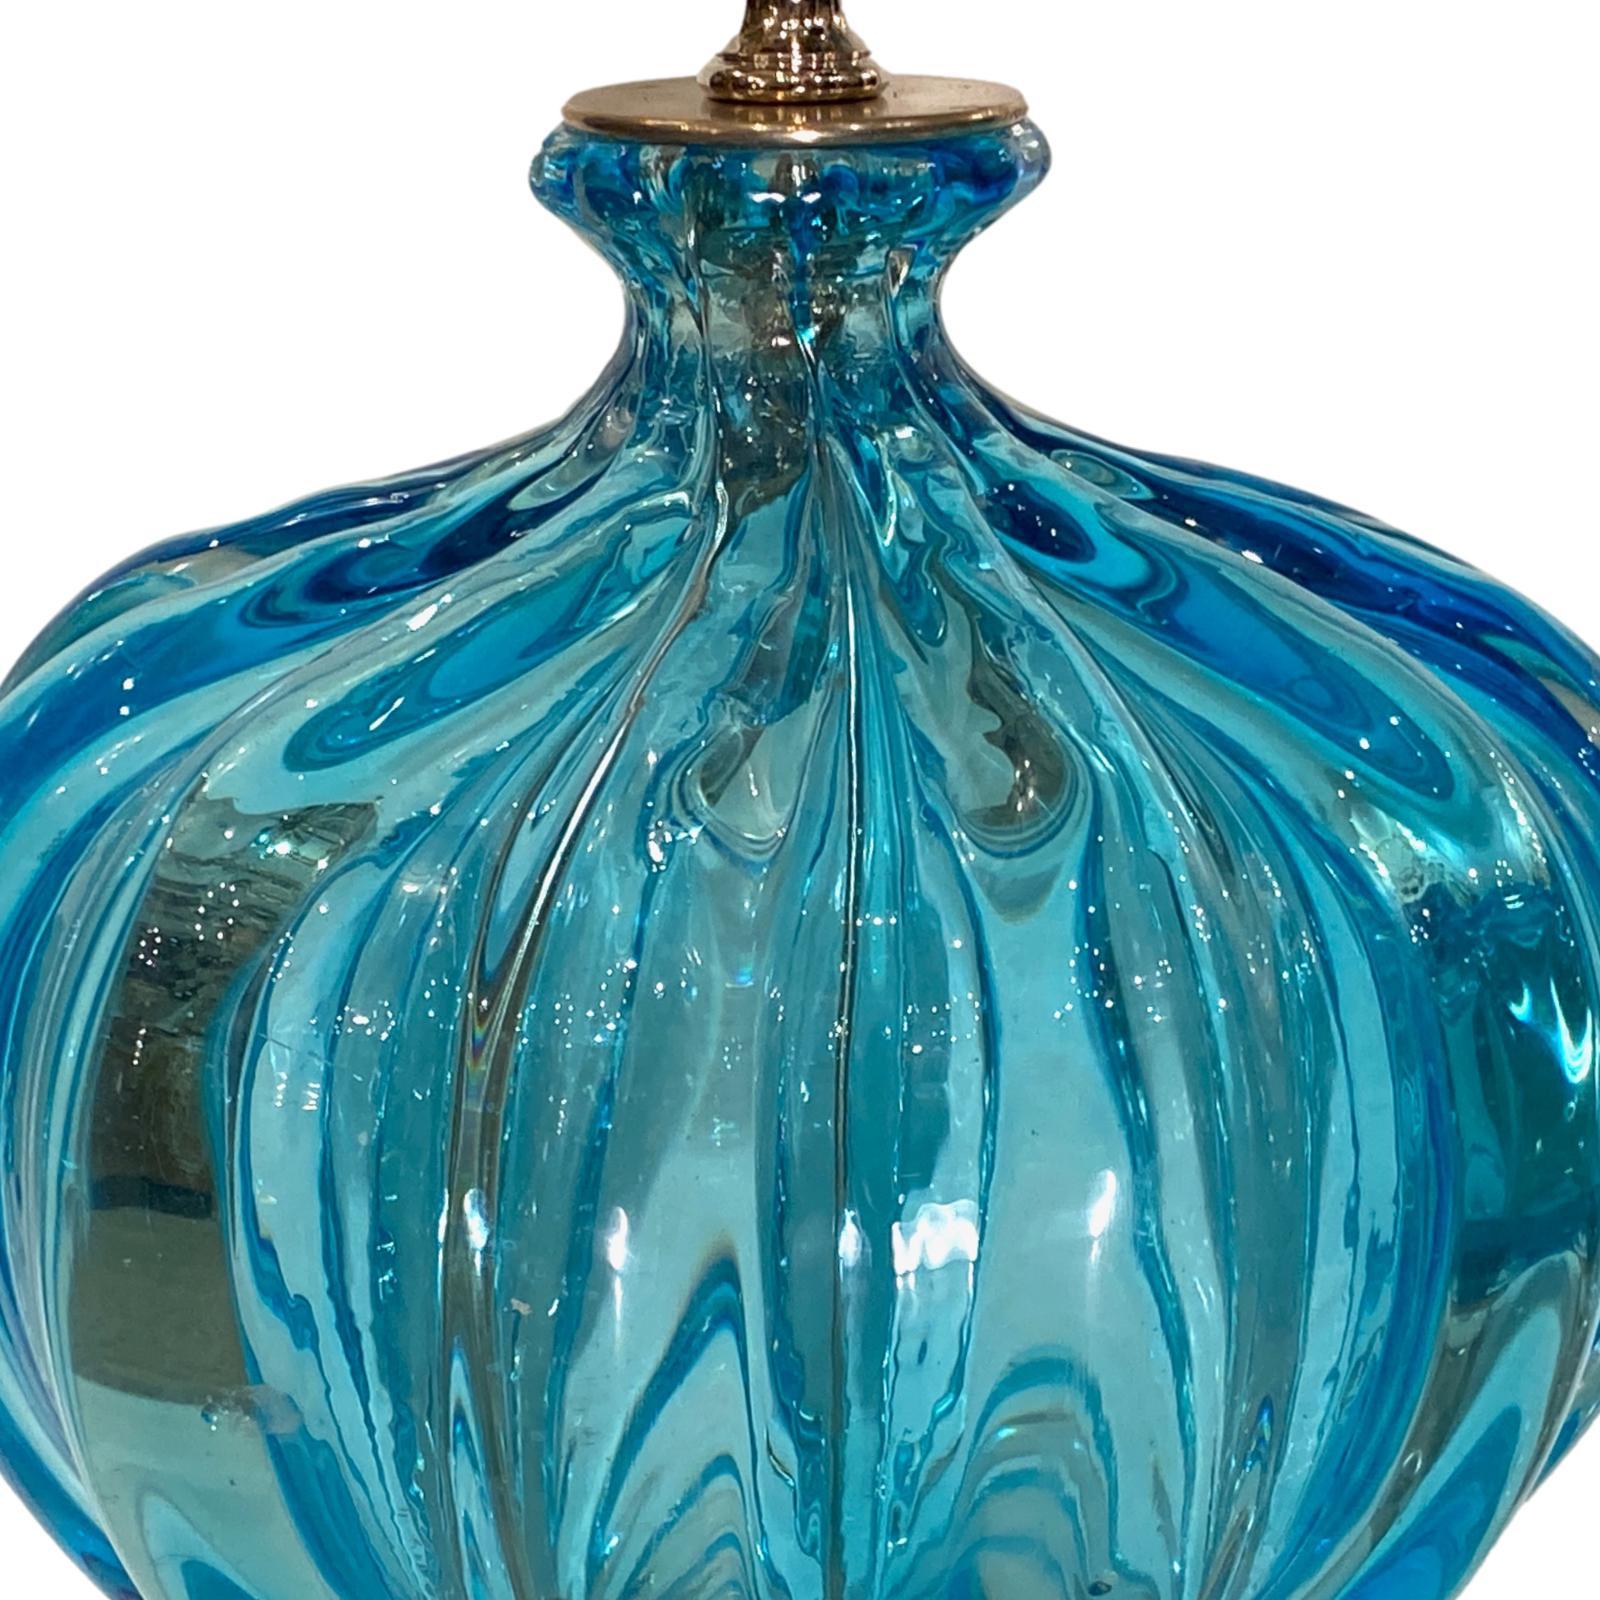 Ein Paar Murano-Lampen aus blauem Glas aus den 1930er Jahren mit geätztem Glas und vernickelten Sockeln.

Abmessungen:
Höhe des Körpers: 14